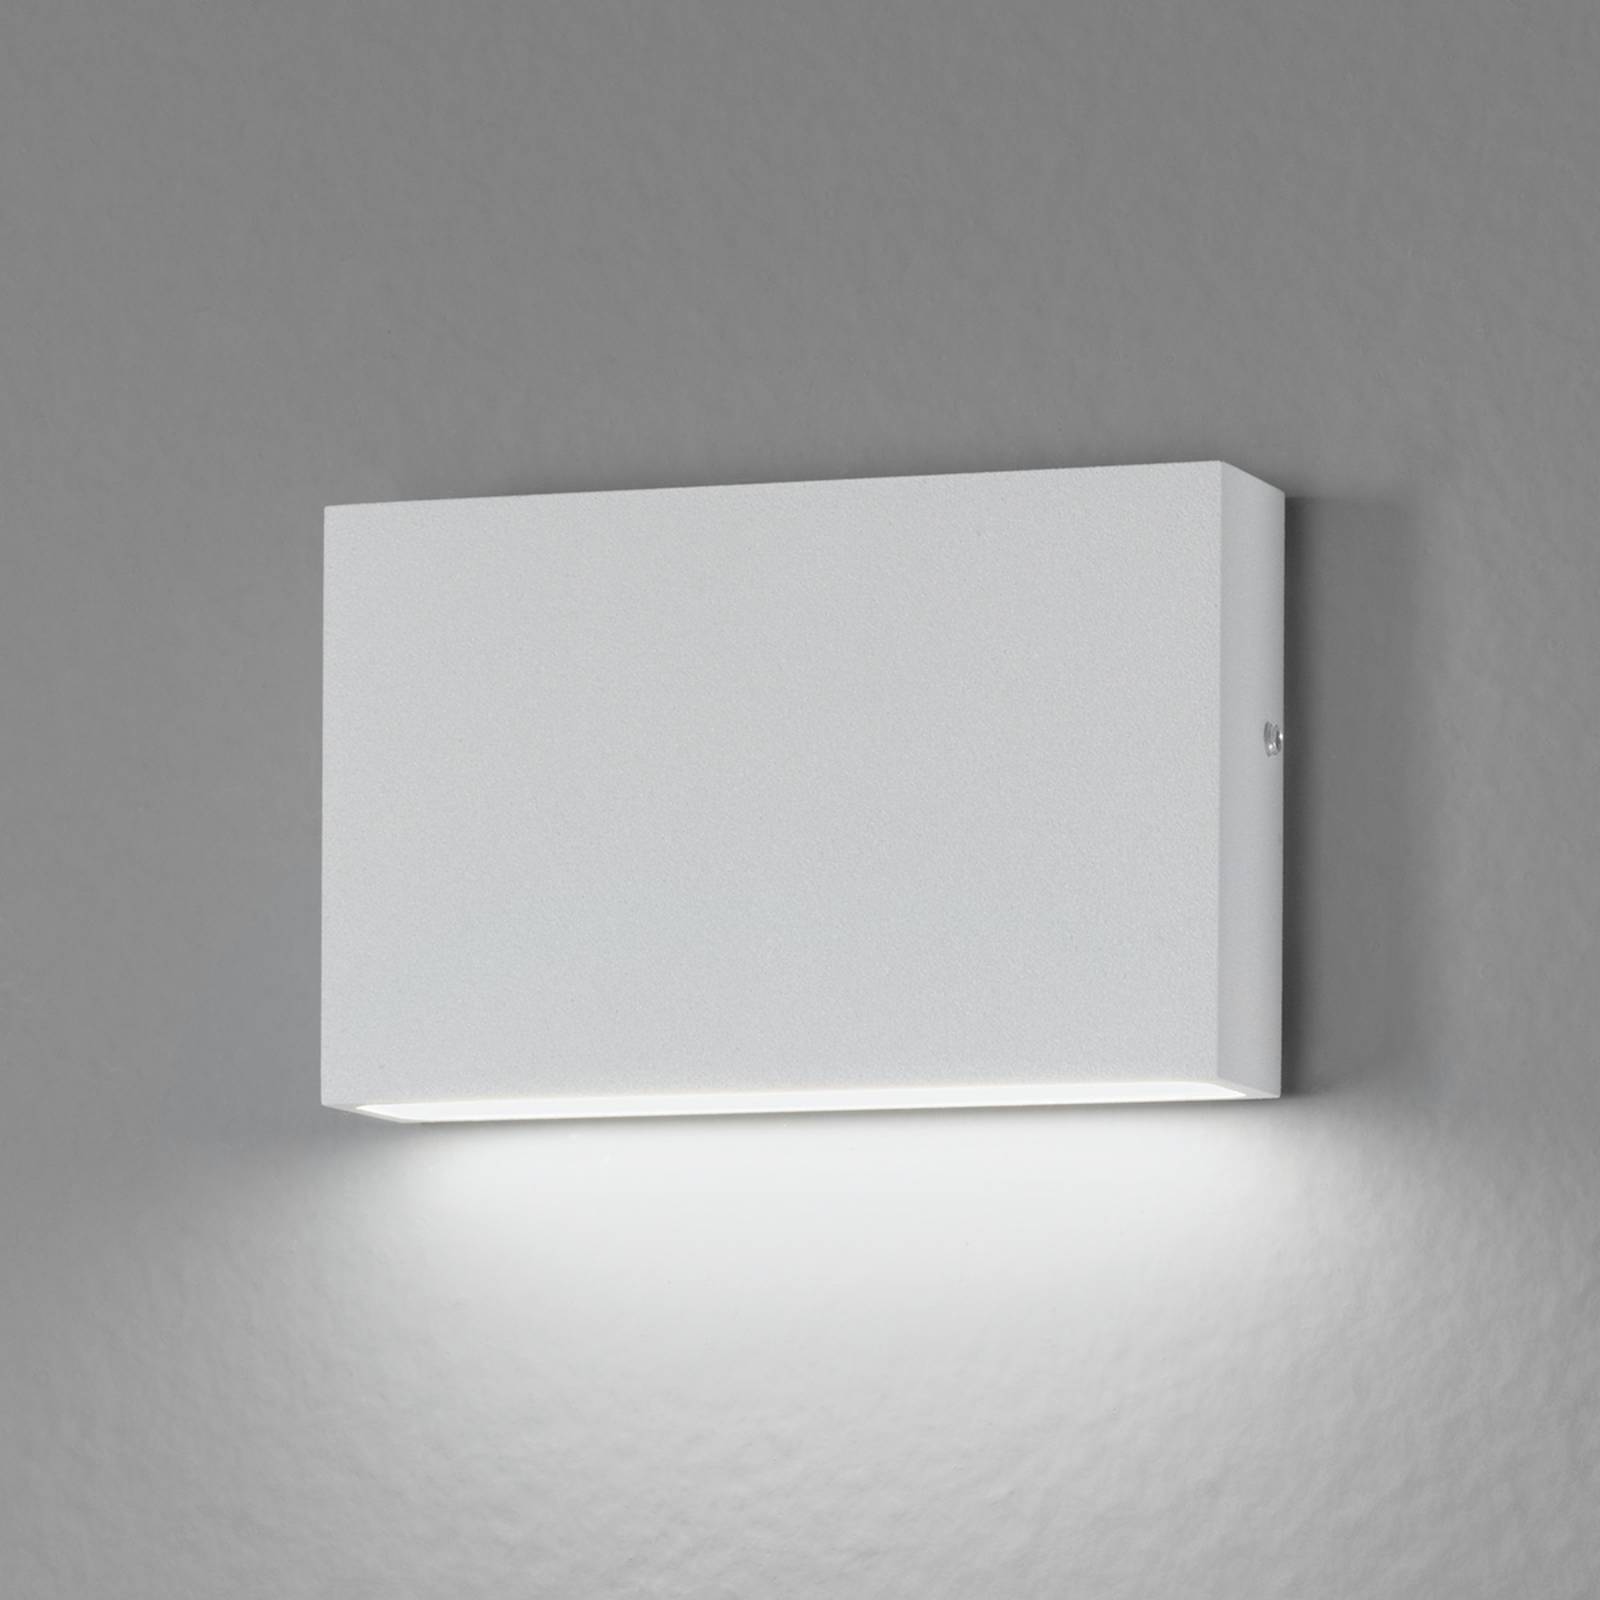 Egger Licht Für innen und außen - LED-Wandleuchte Flatbox